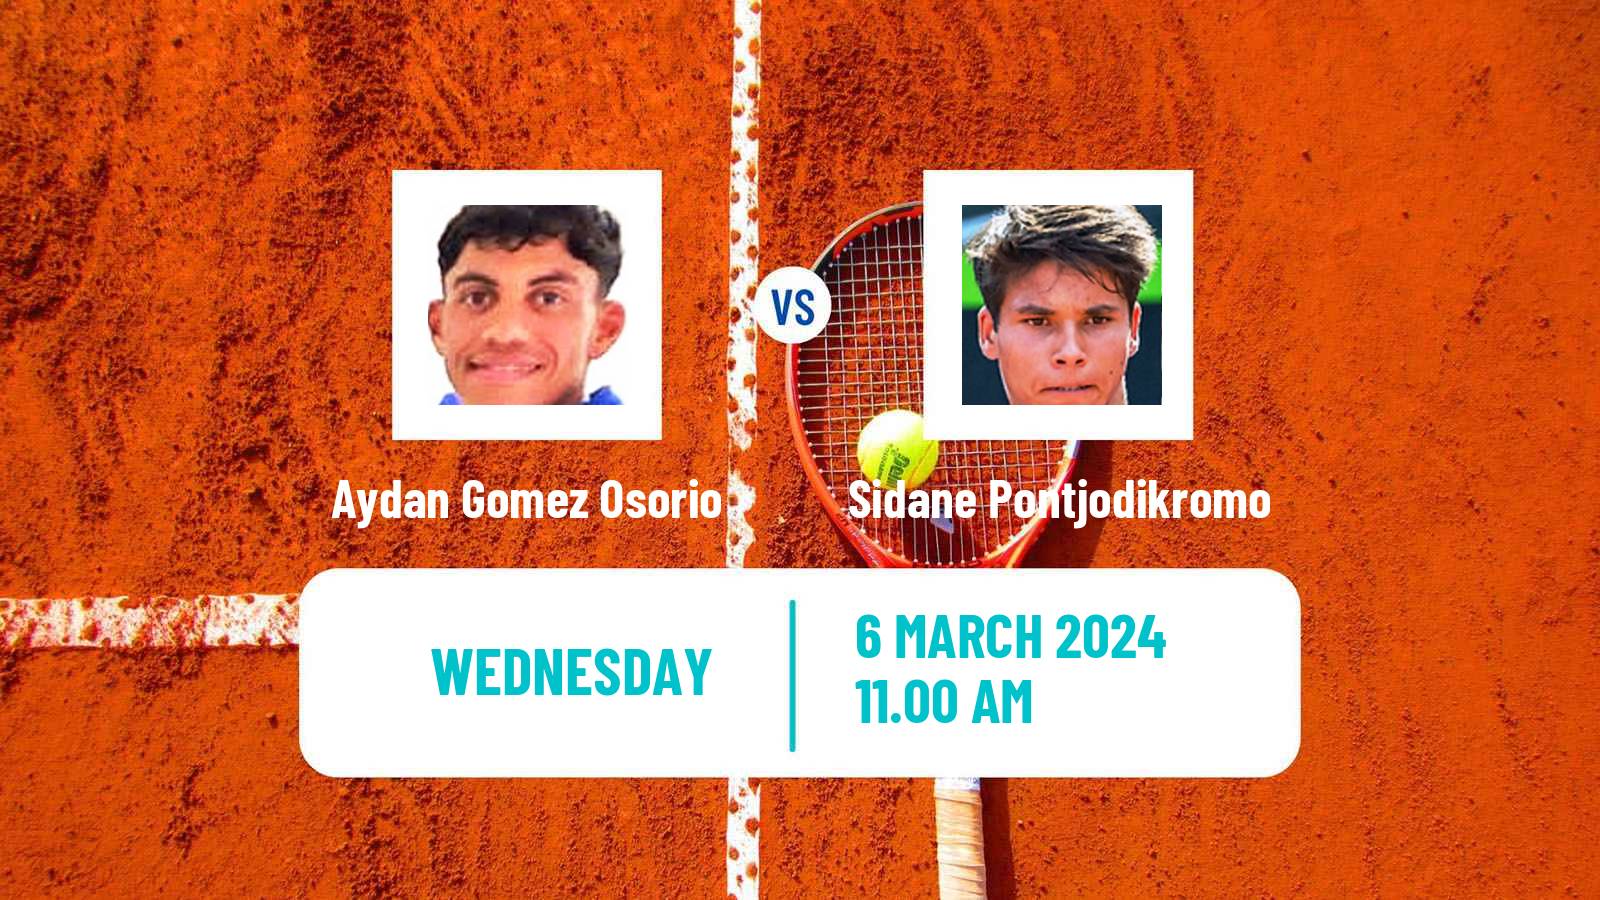 Tennis ITF M25 Santo Domingo Men Aydan Gomez Osorio - Sidane Pontjodikromo